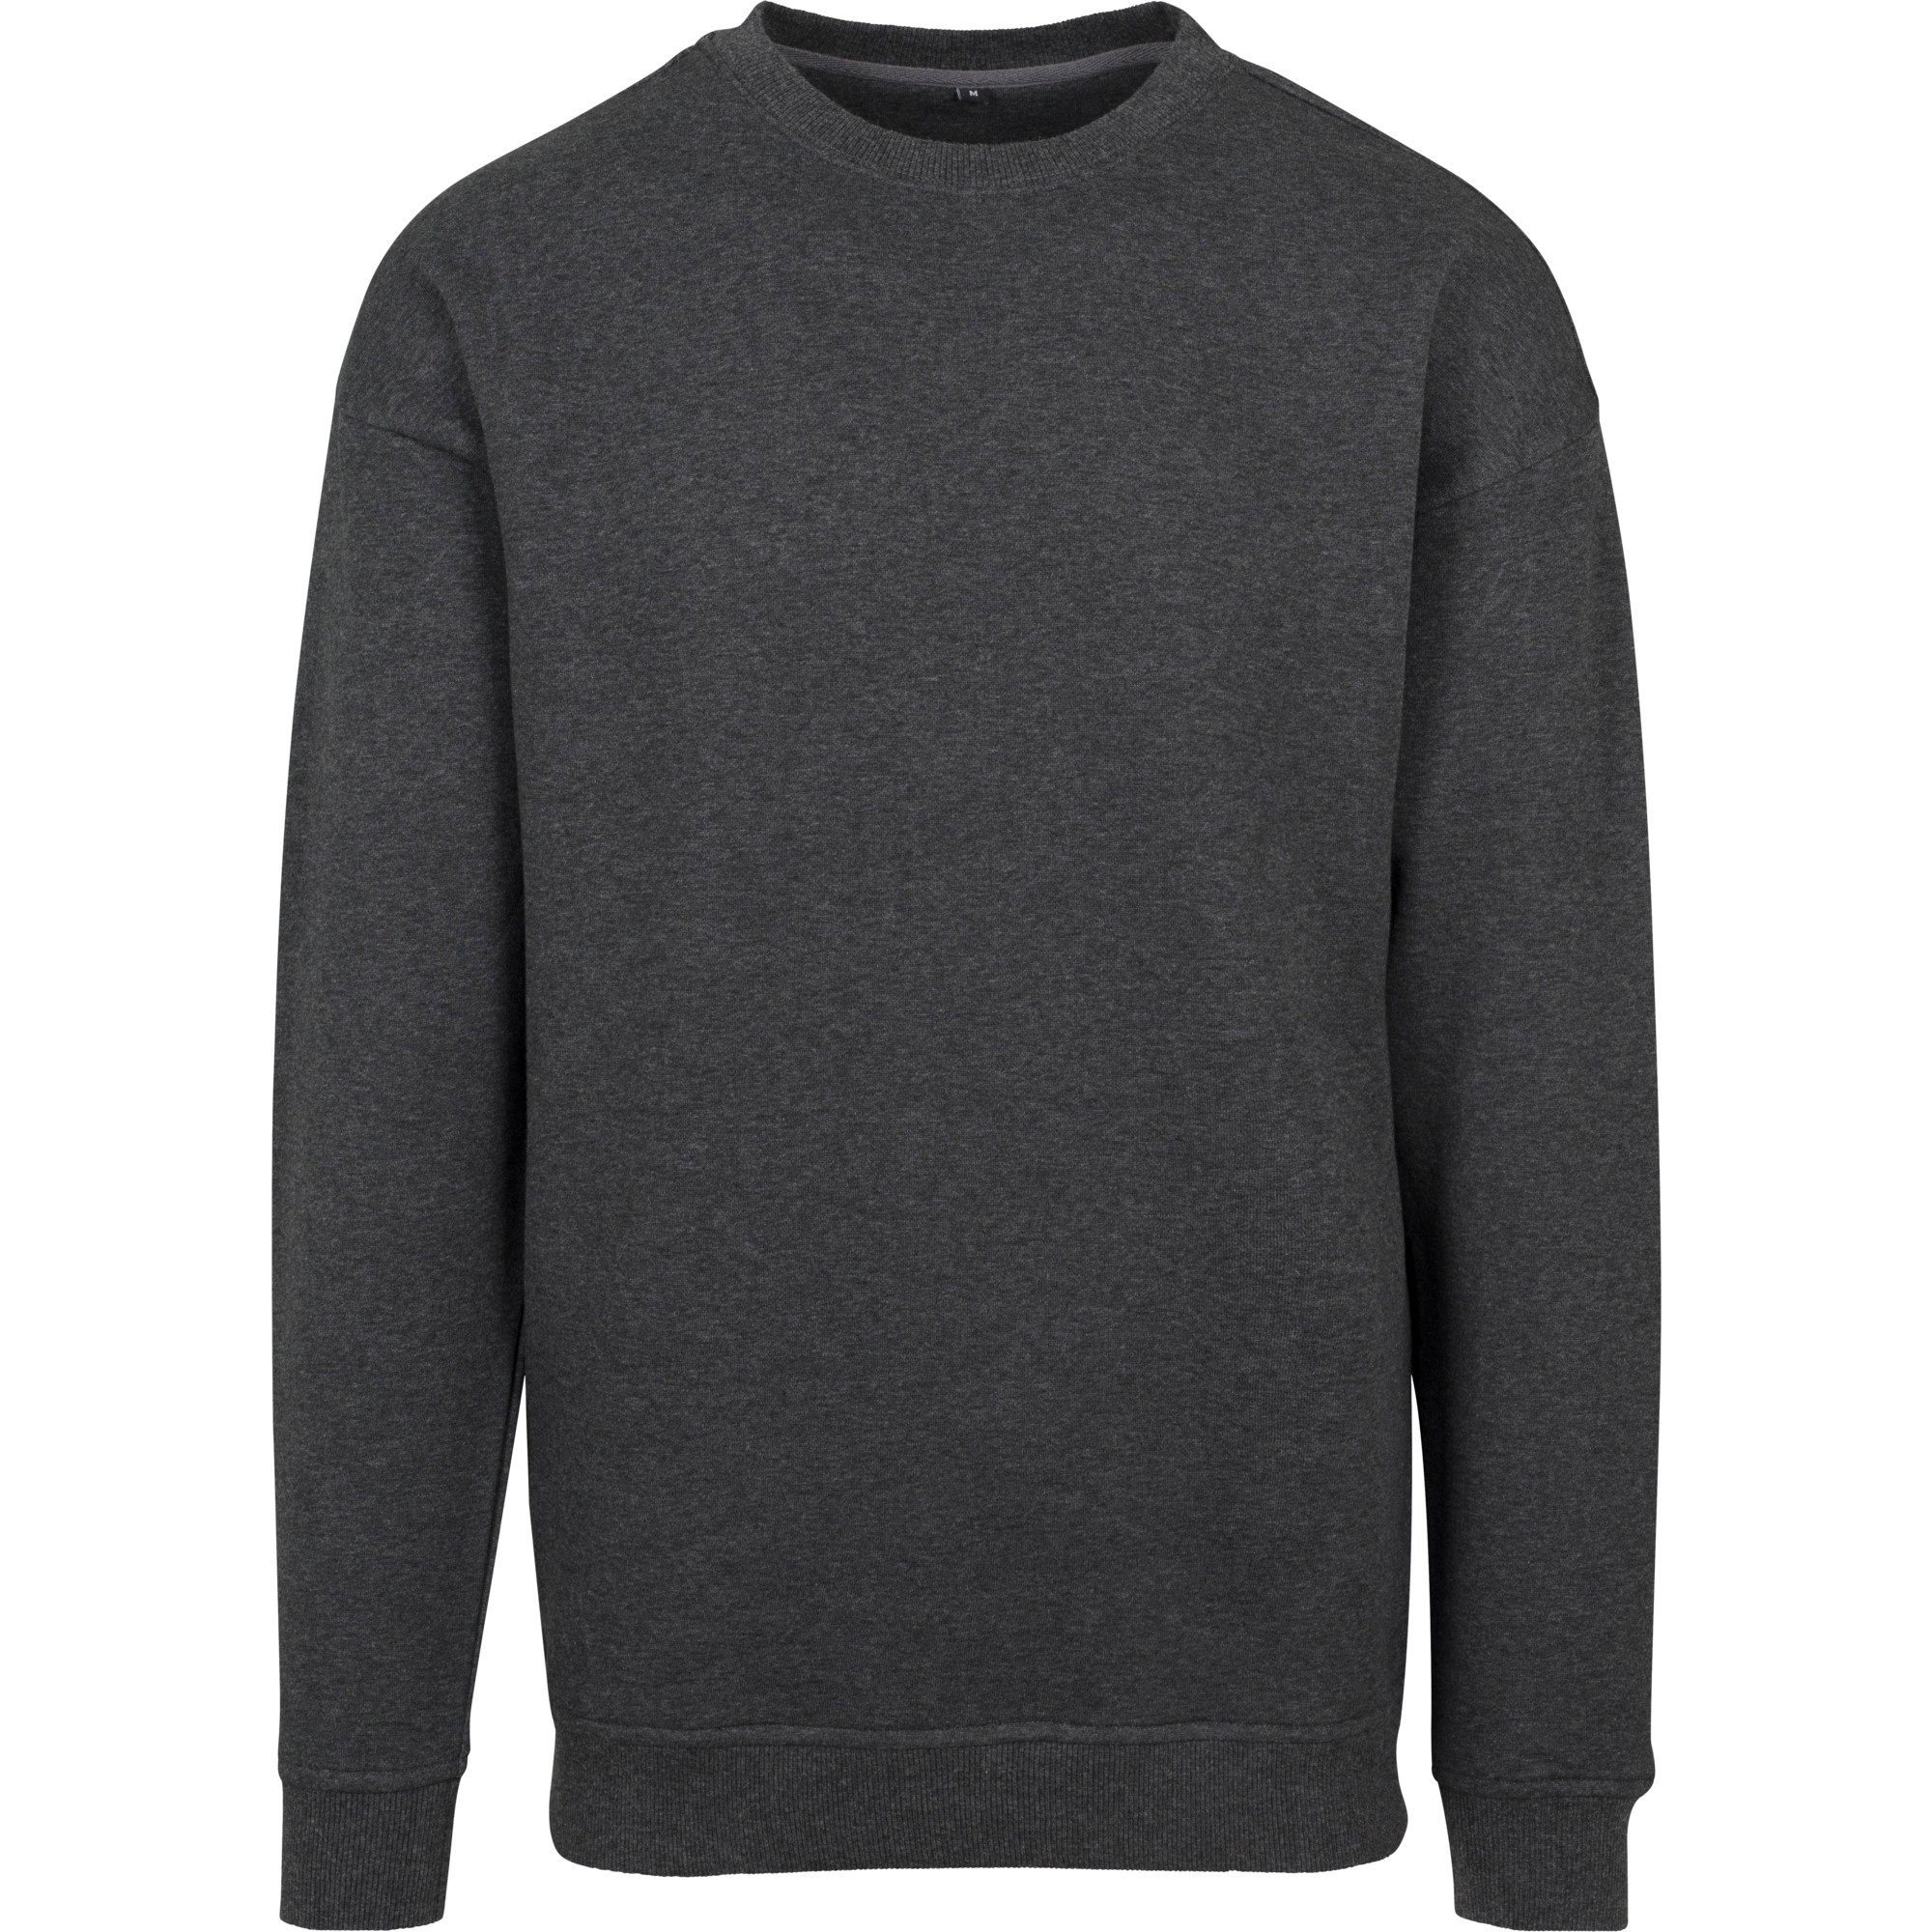 Verschiedene Produkte in unserem Shop Build Your Brand Sweatshirt 5XL bis Herren Pullover schwarz schwerer S Sweater Crewneck